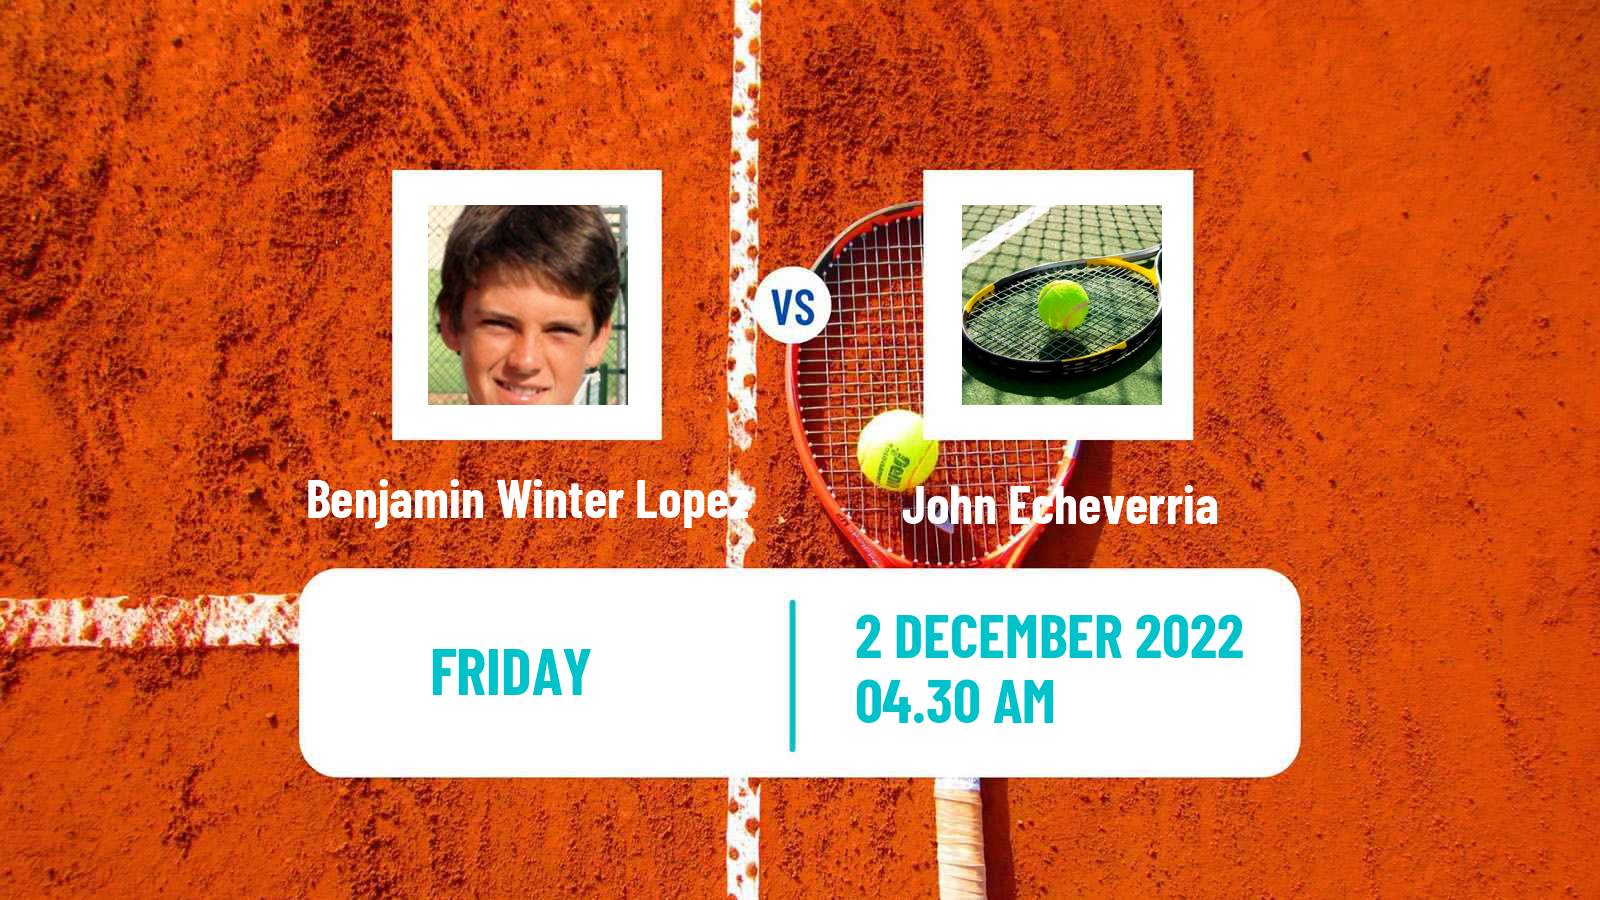 Tennis ITF Tournaments Benjamin Winter Lopez - John Echeverria